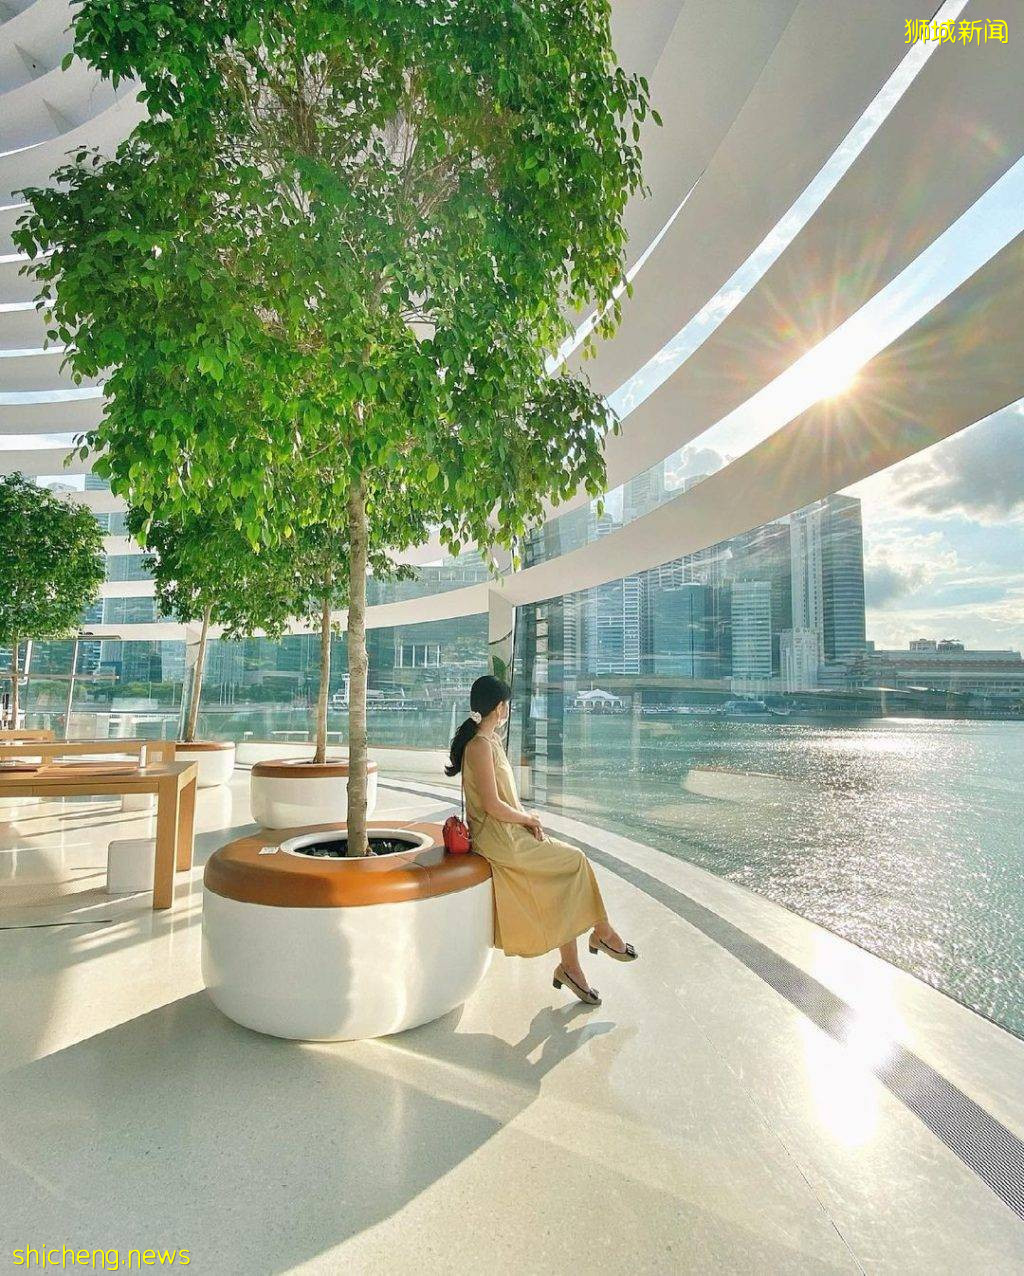 喚醒柔和美學✨新加坡純白建築打卡📷夢幻、簡約、Ins風十足🎀不修圖馬上能出片